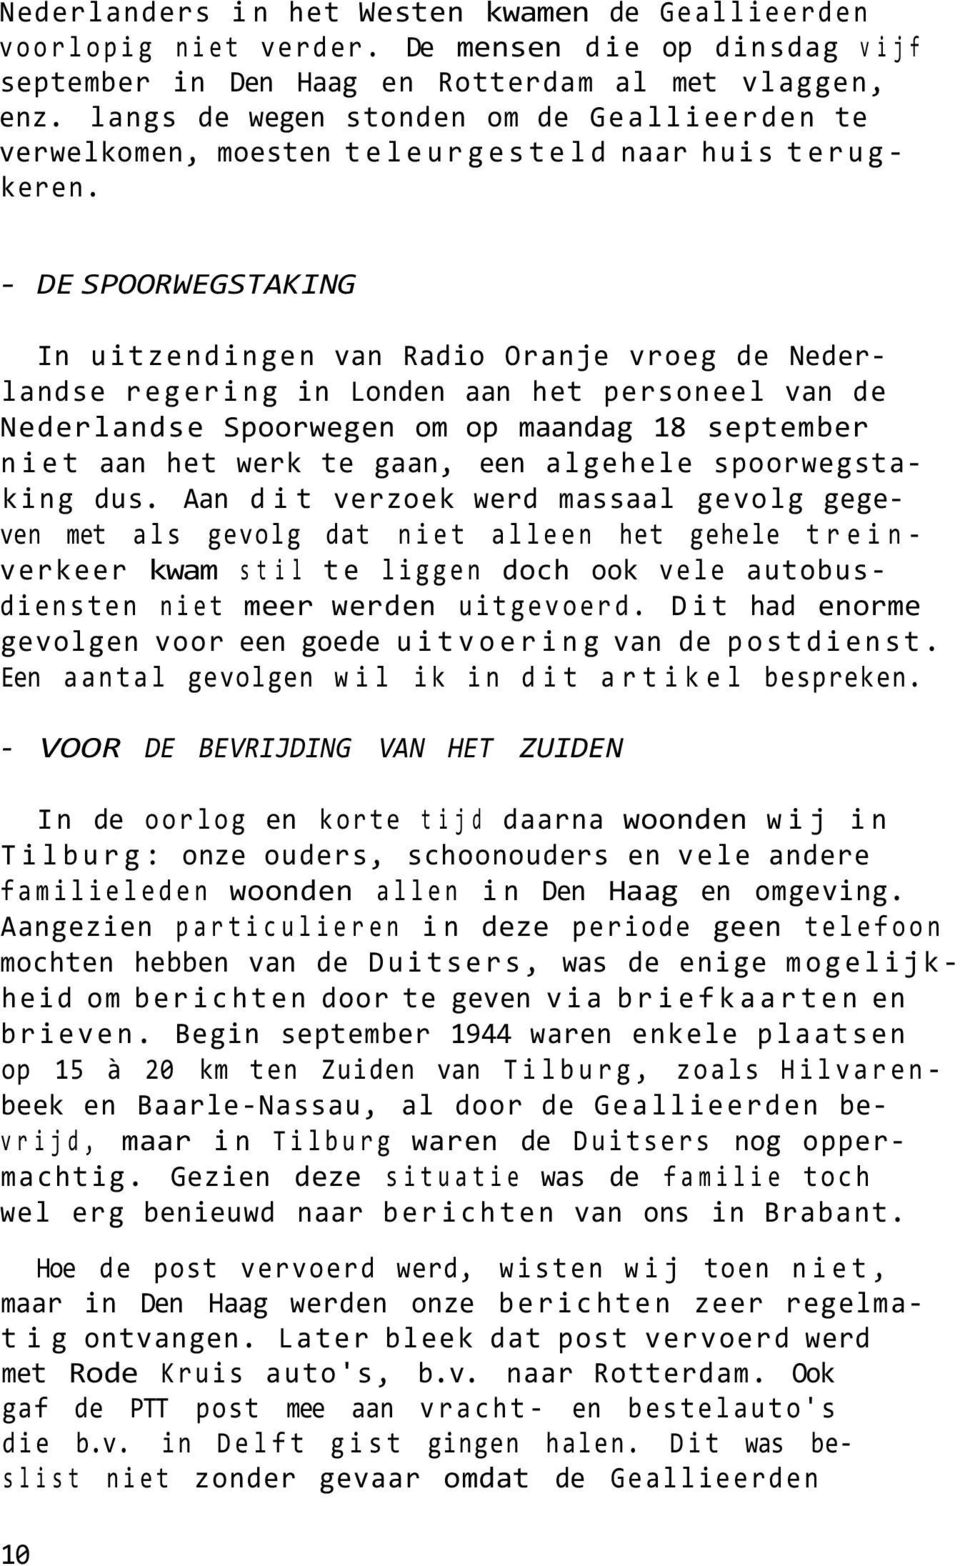 - DE SPOORWEGSTAKING In uitzendingen van Radio Oranje vroeg de Nederlandse regering in Londen aan het personeel van de Nederlandse Spoorwegen om op maandag 18 september niet aan het werk te gaan, een